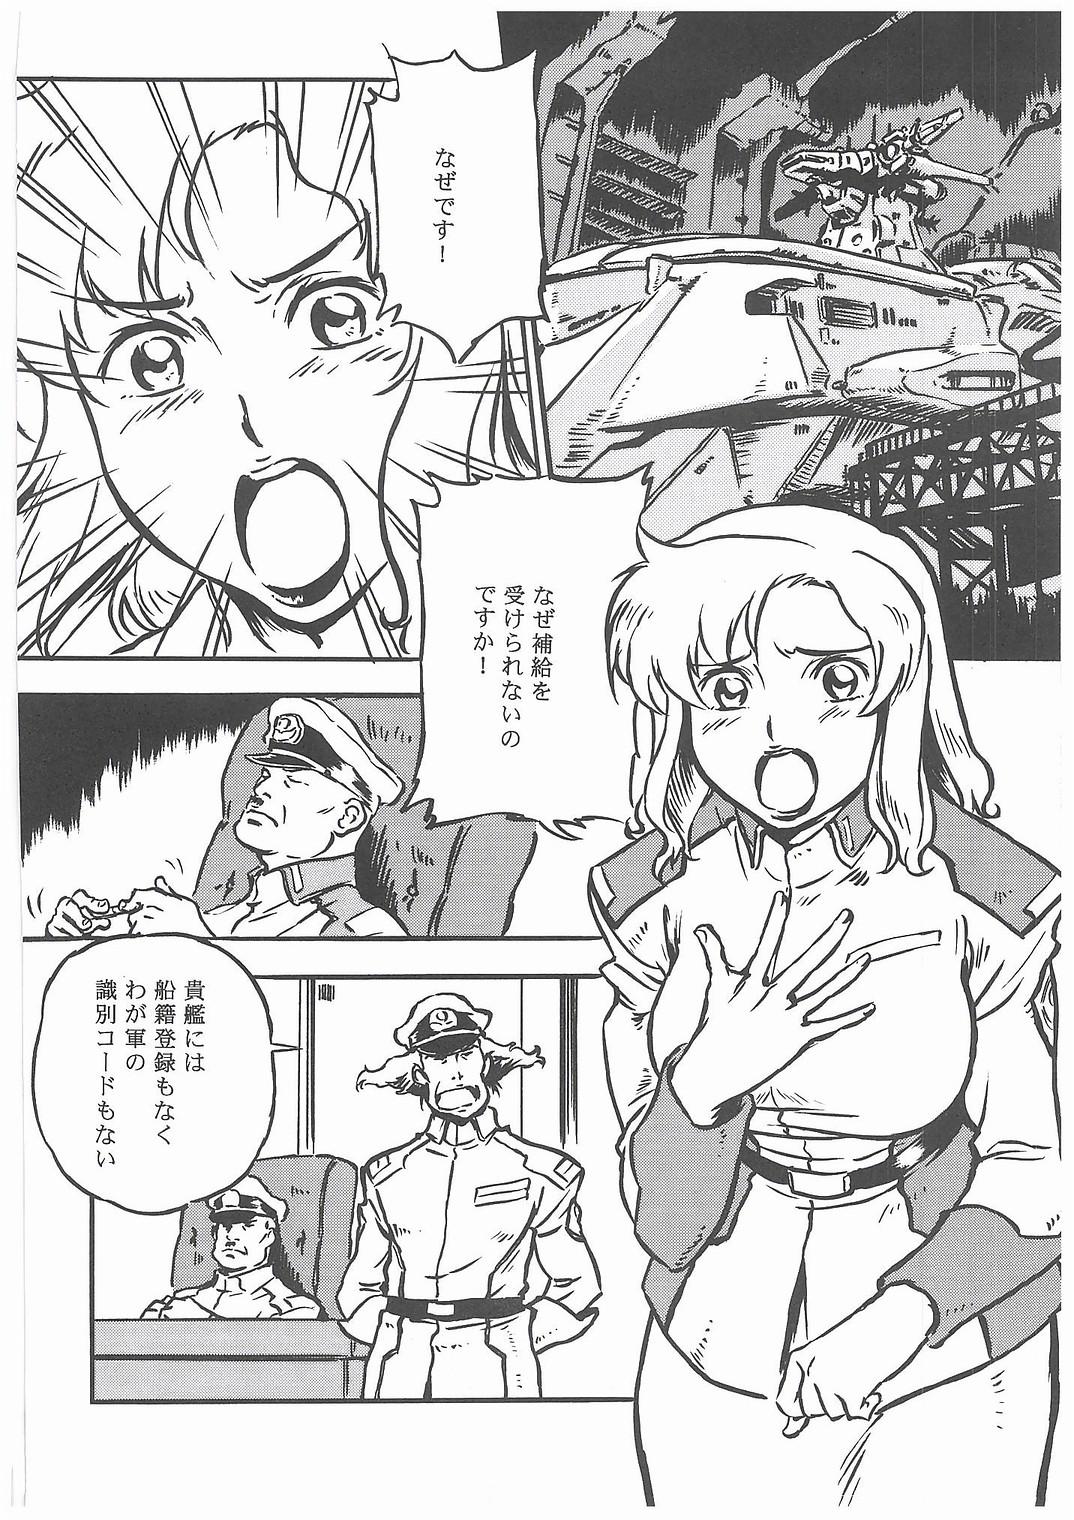 Pareja G+ - Gundam seed X - Page 5